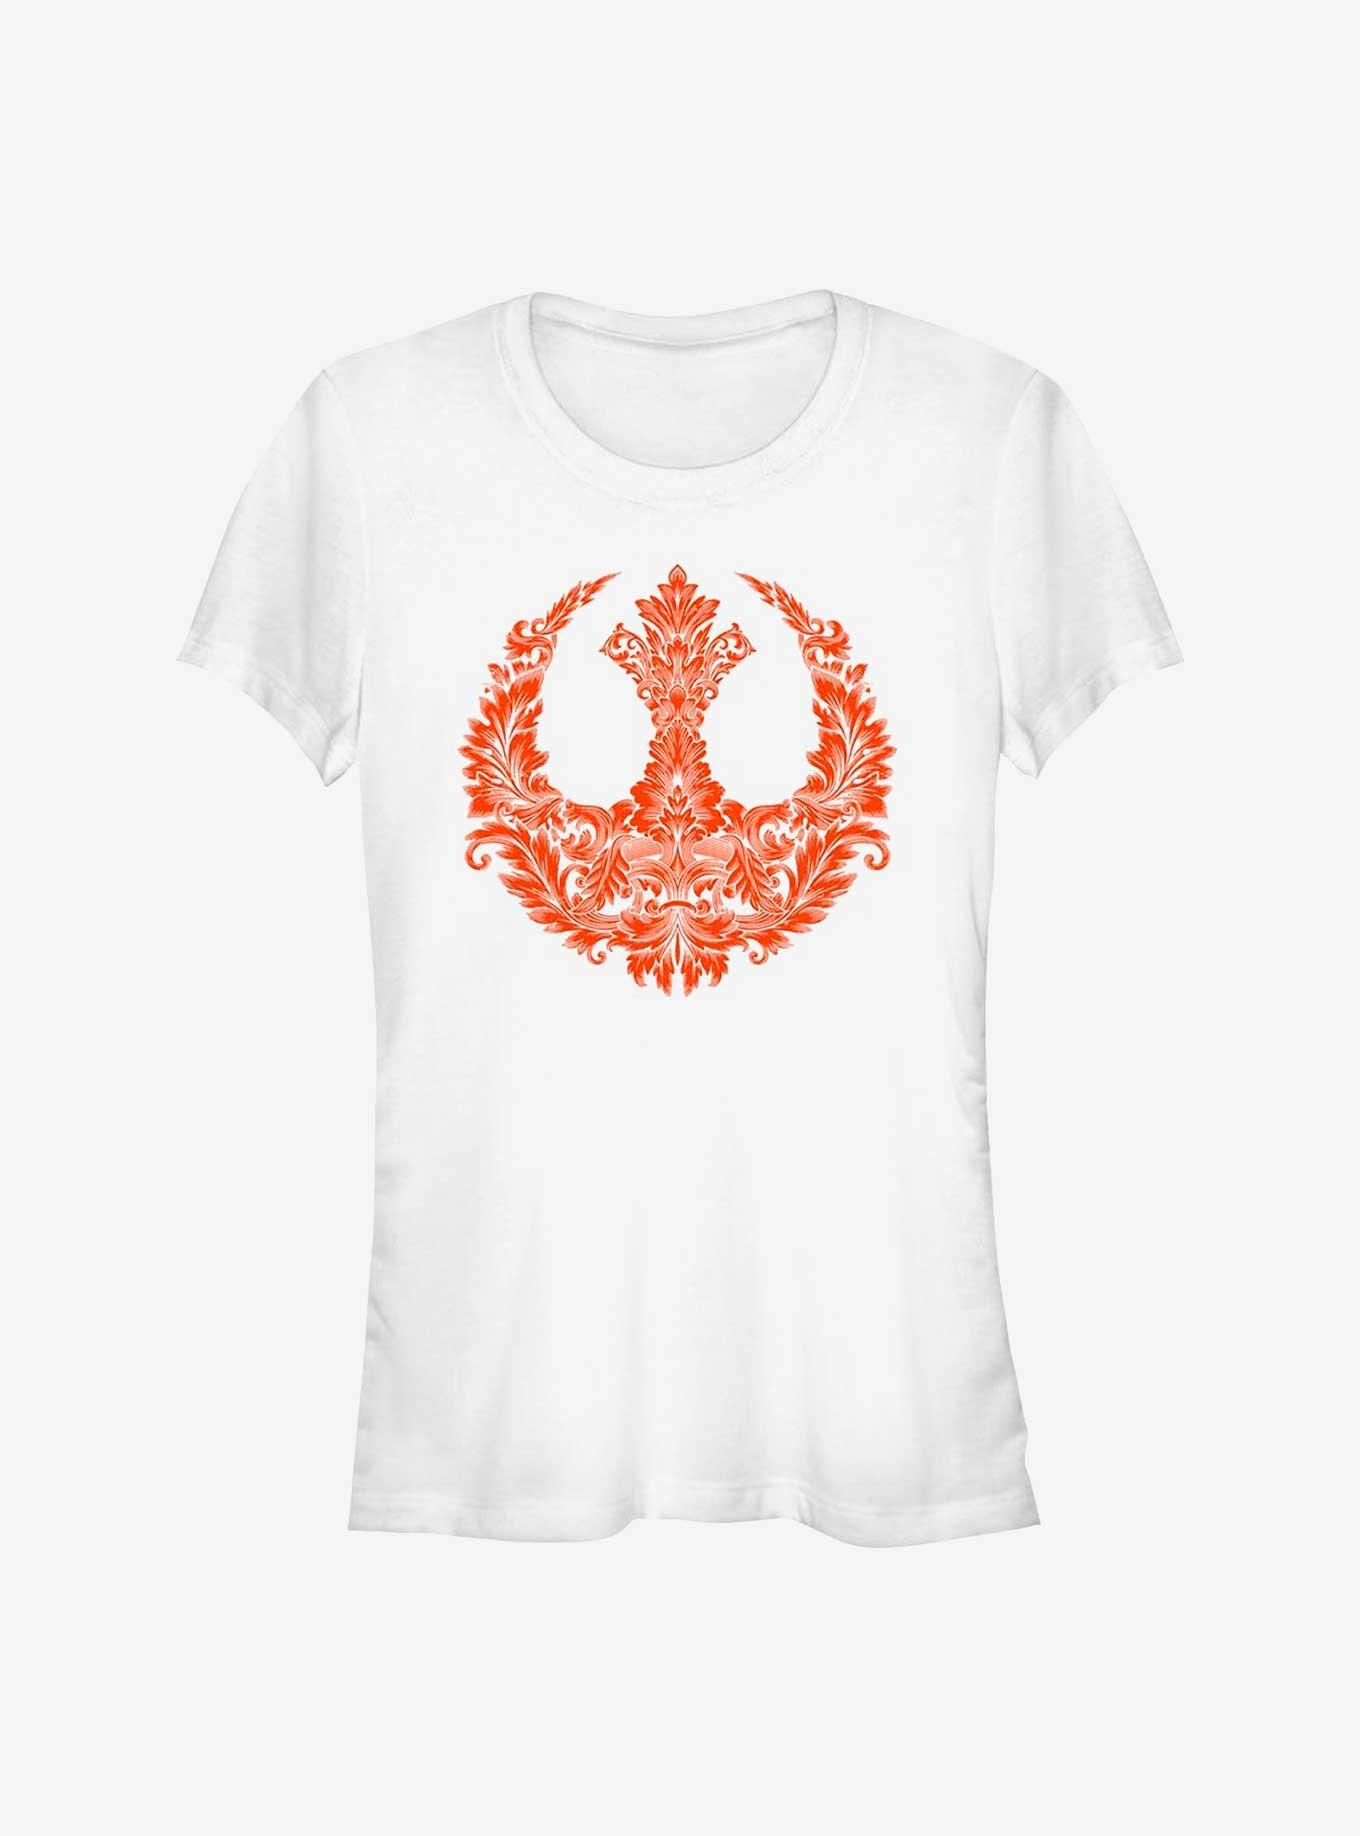 Star Wars Rebel Floral Symbol Girls T-Shirt, , hi-res